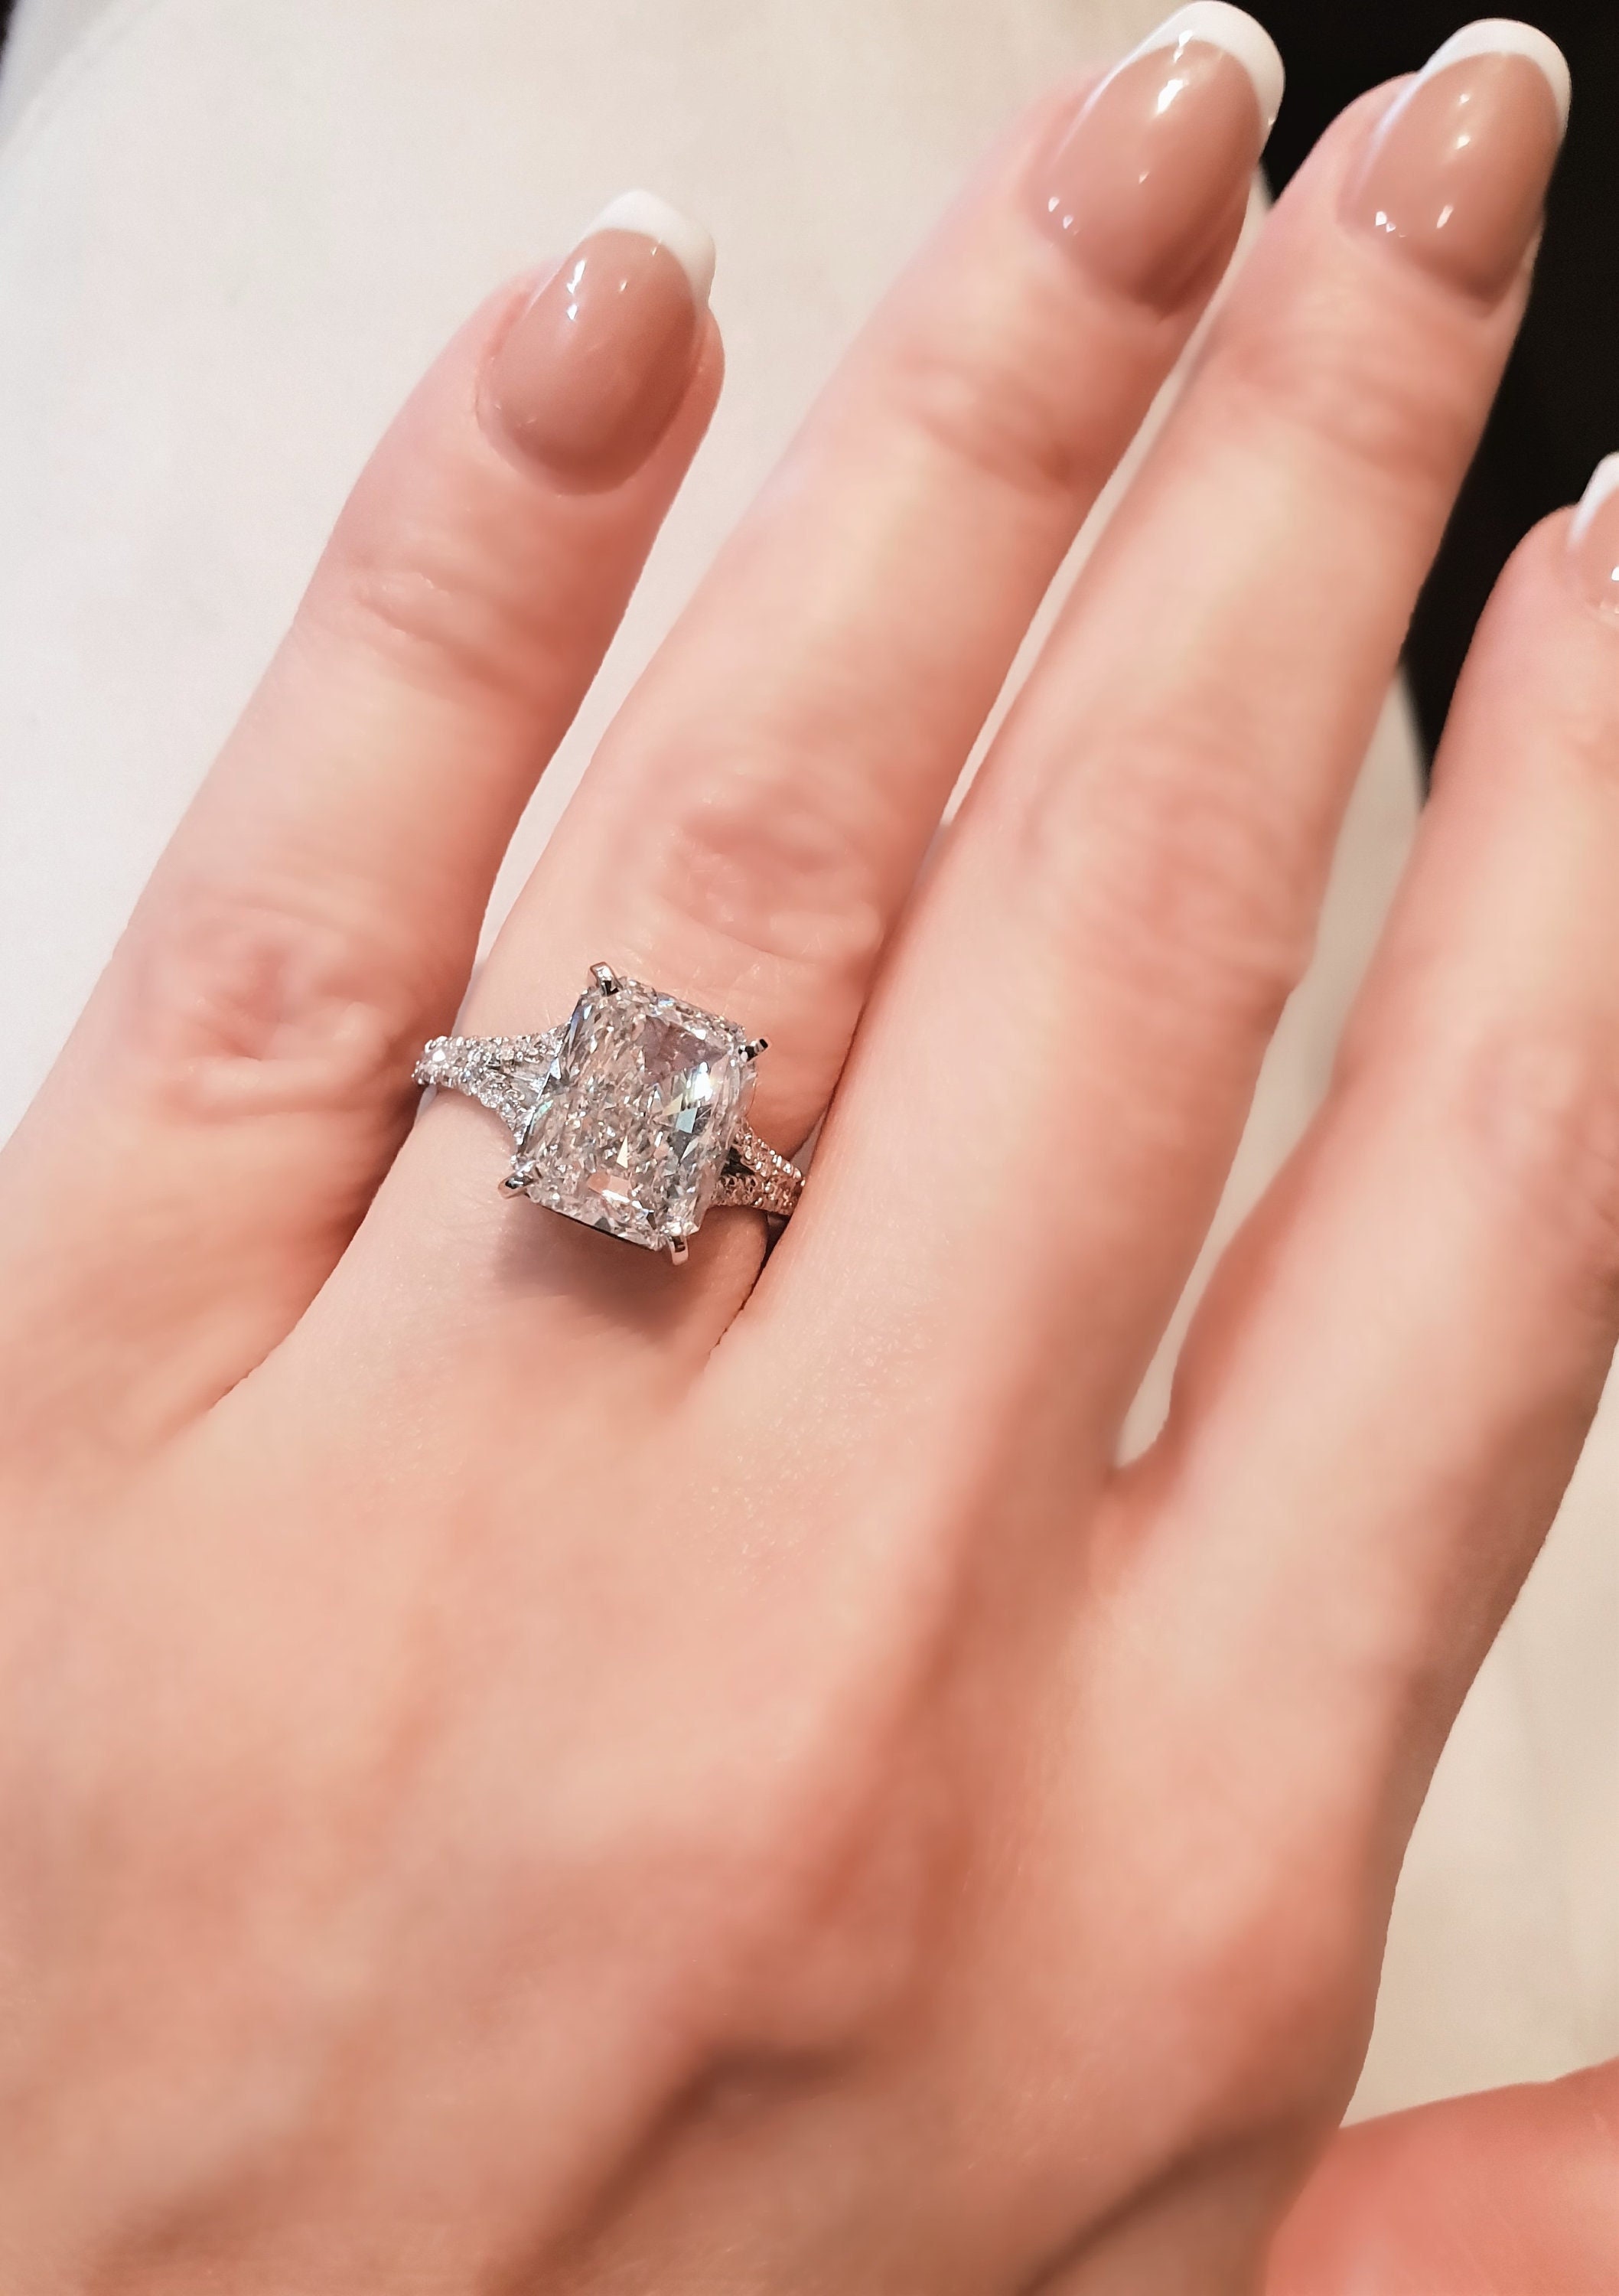 4 Carat Lab Grown Diamond Engagement Rings